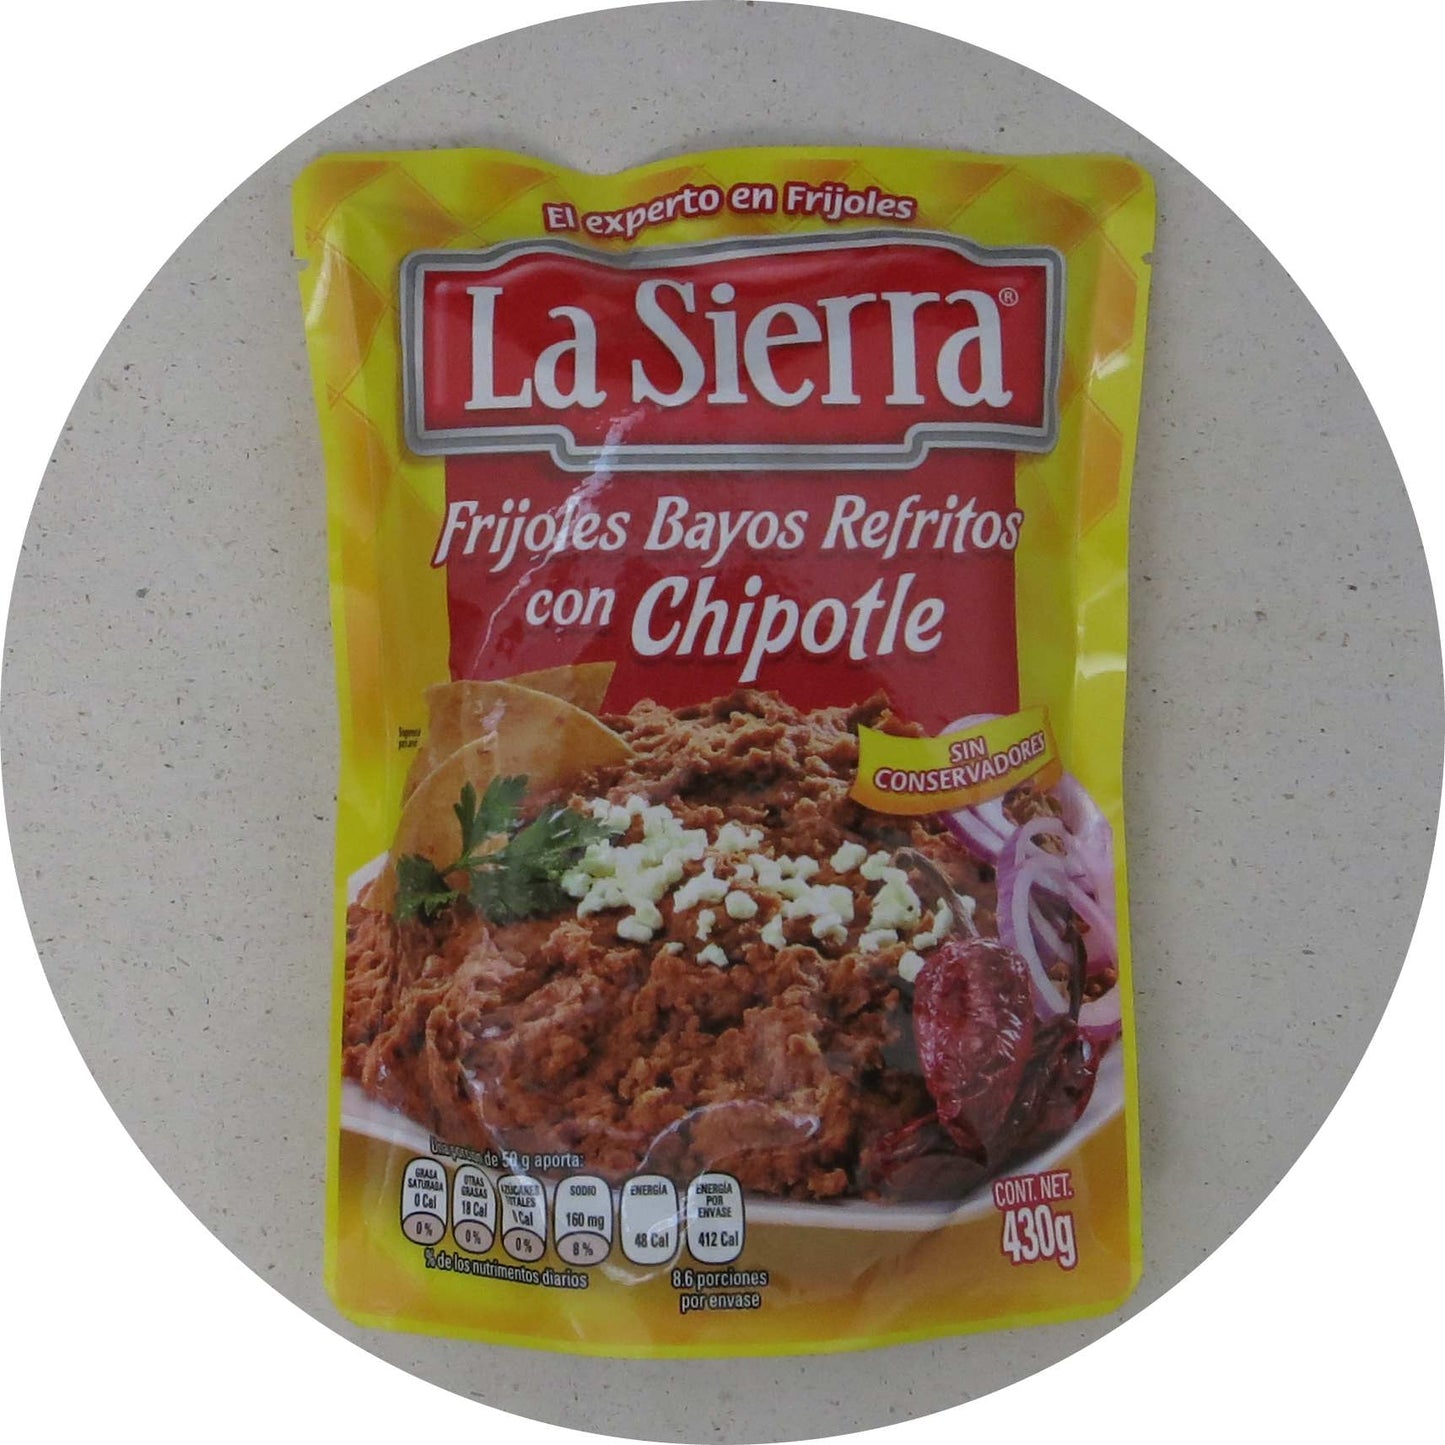 La Sierra Frijoles Bayos Refritos con Chipotle 430g